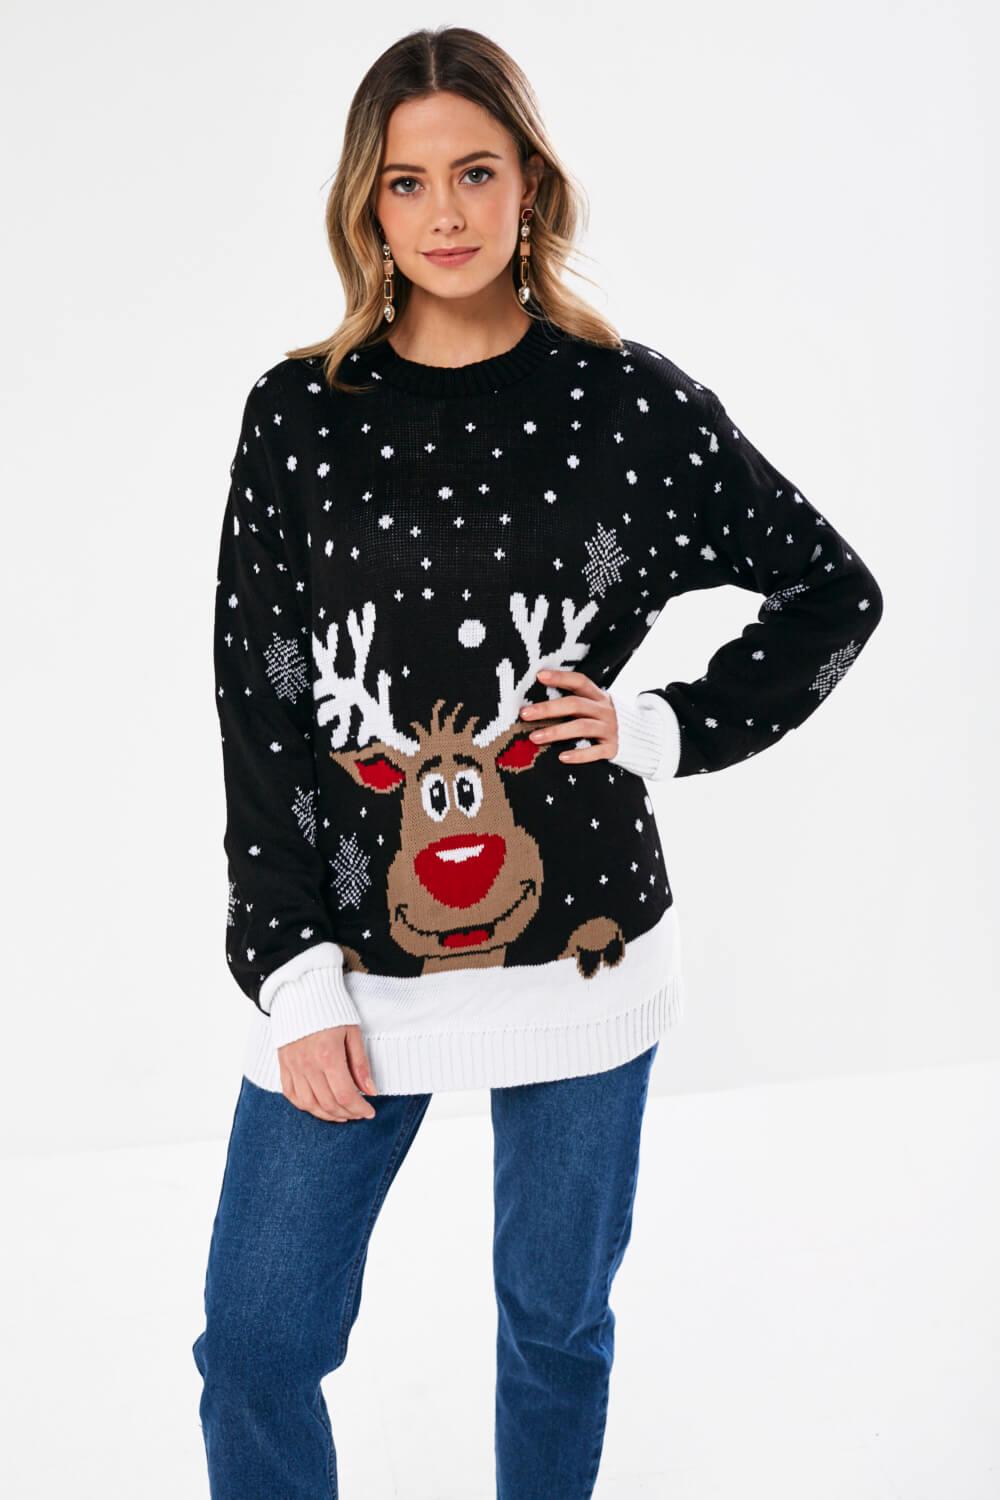 Rudolph The Reindeer Christmas Jumper in Black | iCLOTHING - iCLOTHING